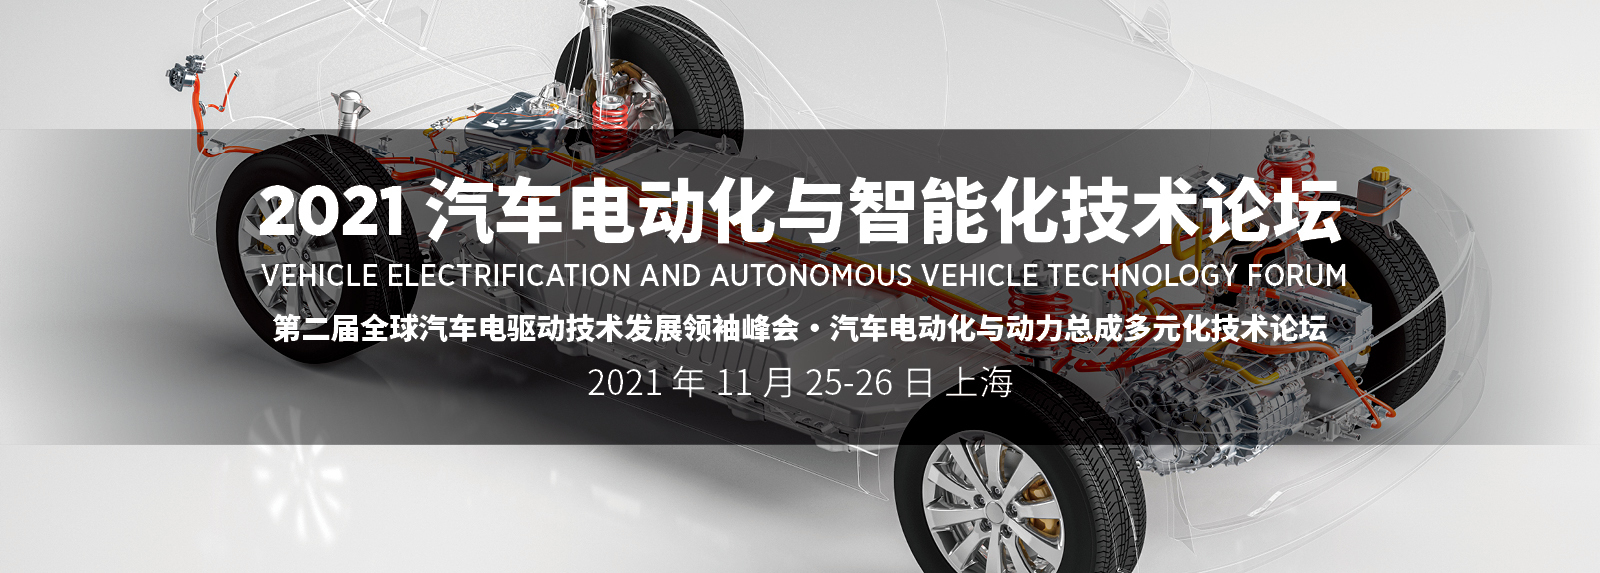 2021 汽车电动化与智能化技术论坛